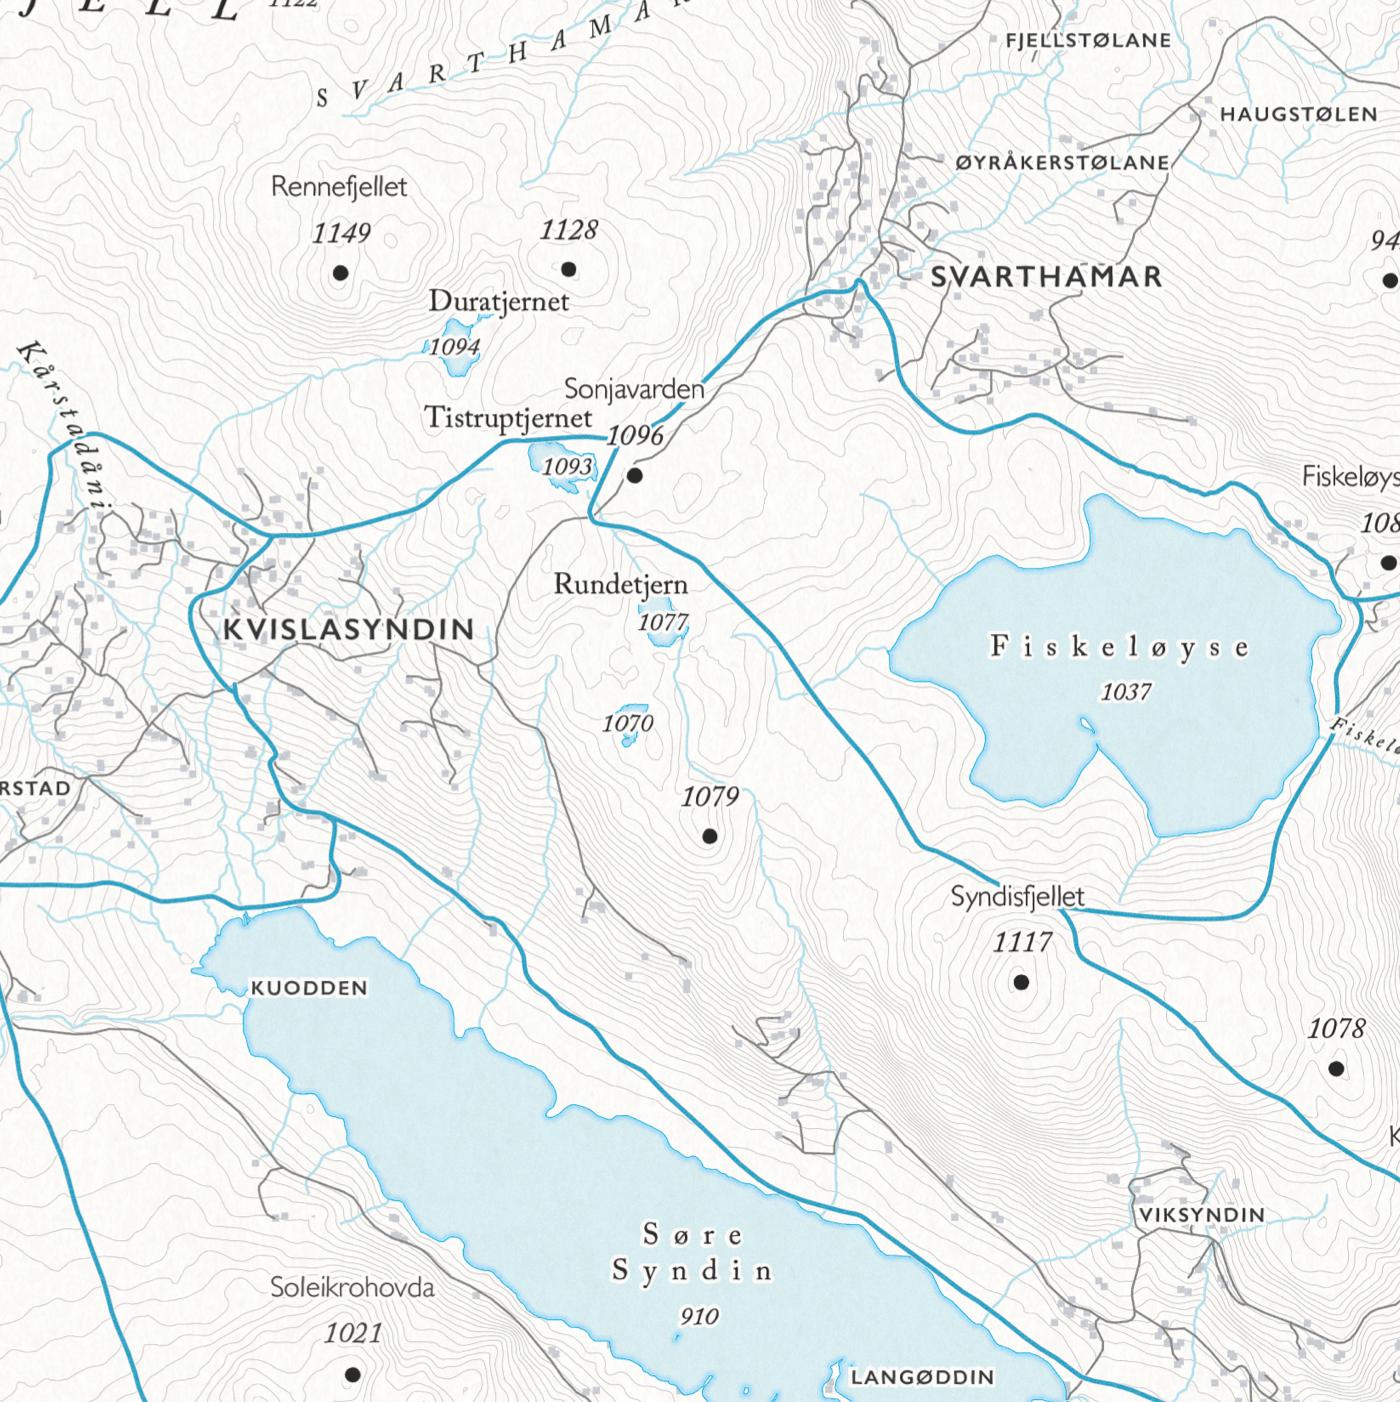 Skikart Syndin (50x70 cm)-Maps-Dapamaps-Hyttefeber